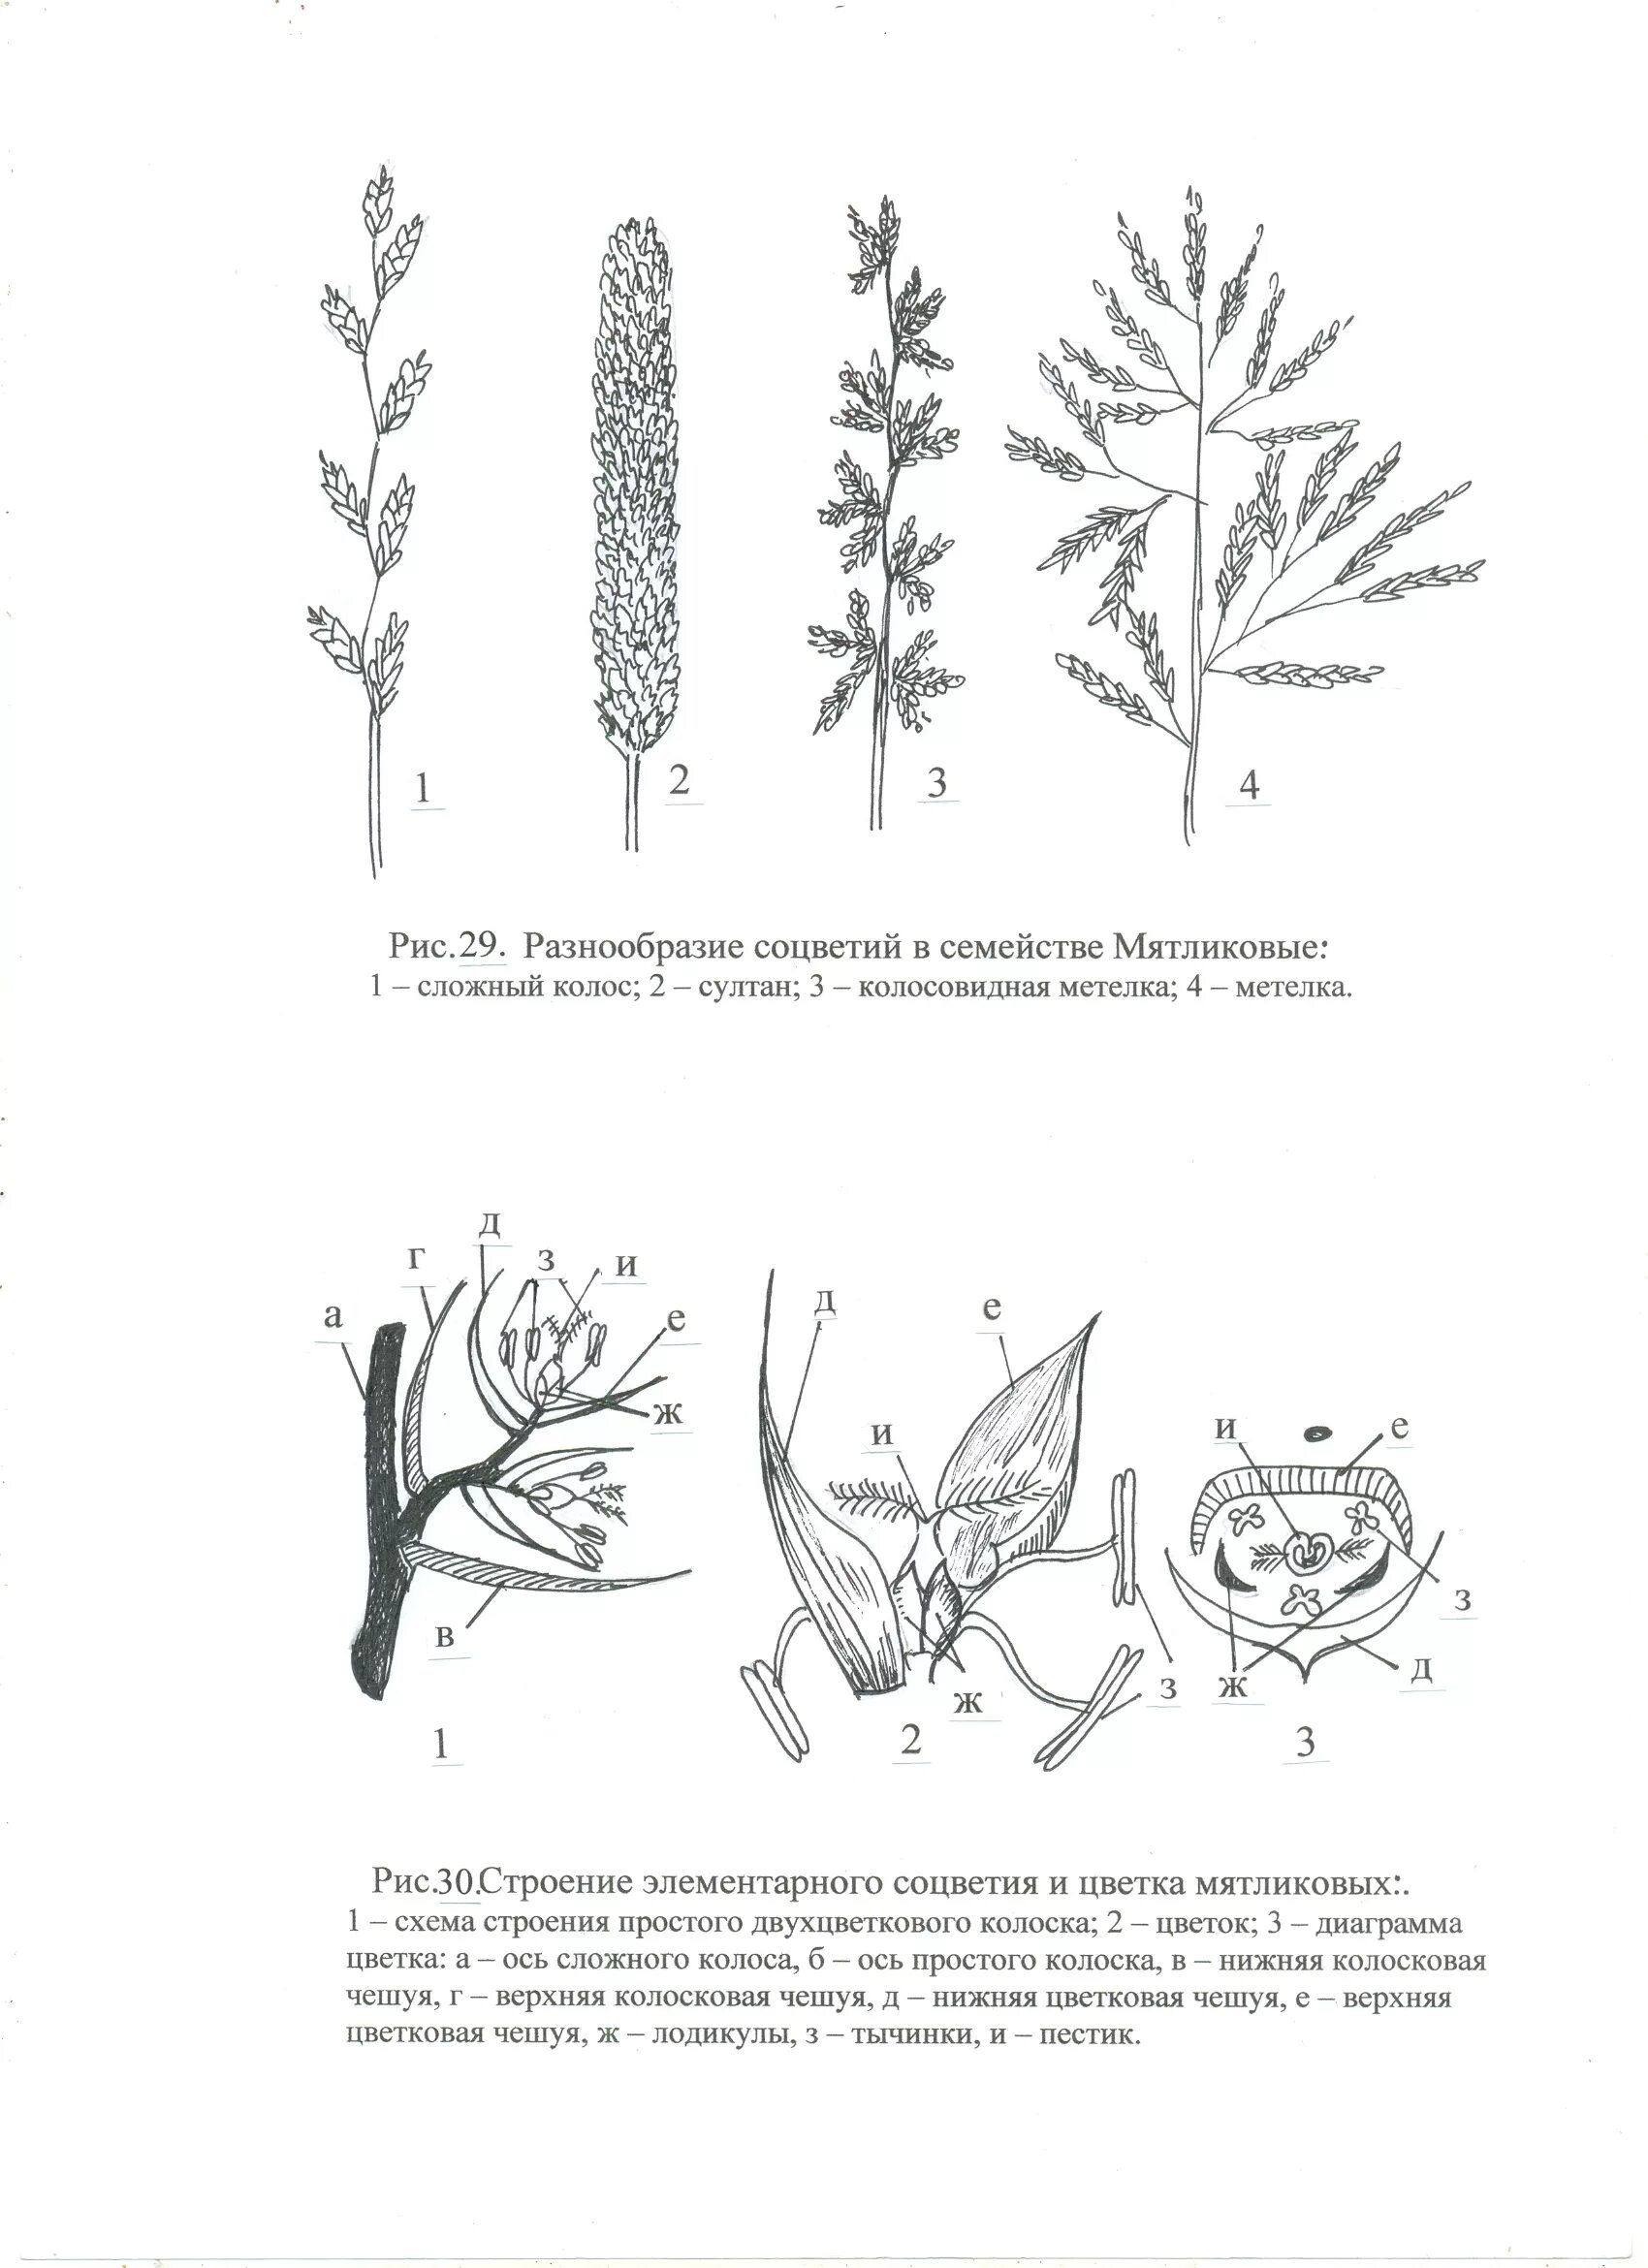 Соцветие злаковых мятликовых. Схема цветка злаковых растений. Схемы соцветий злаковых растений.